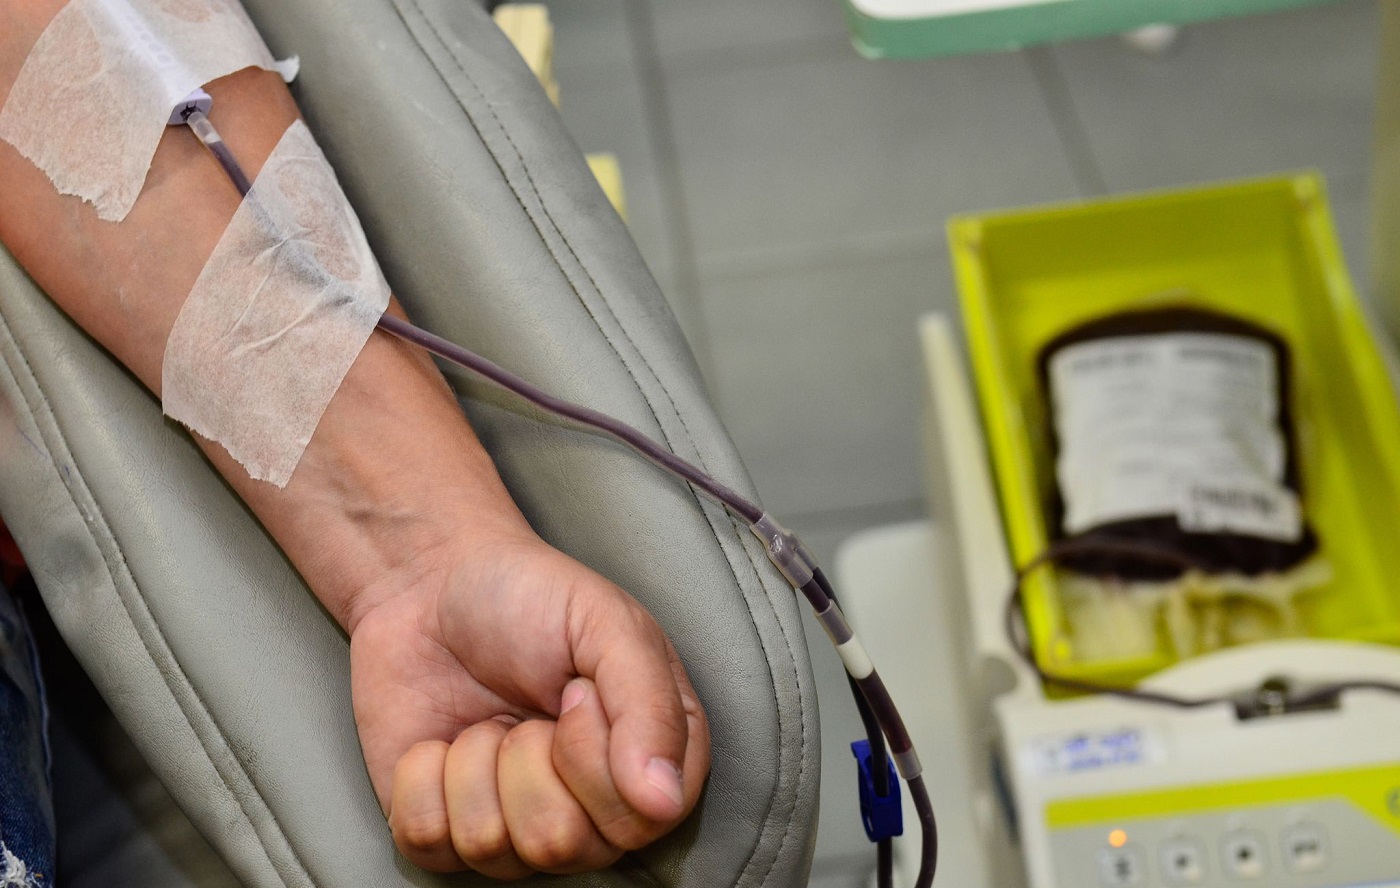 Exame de sangue pode detectar hepatite